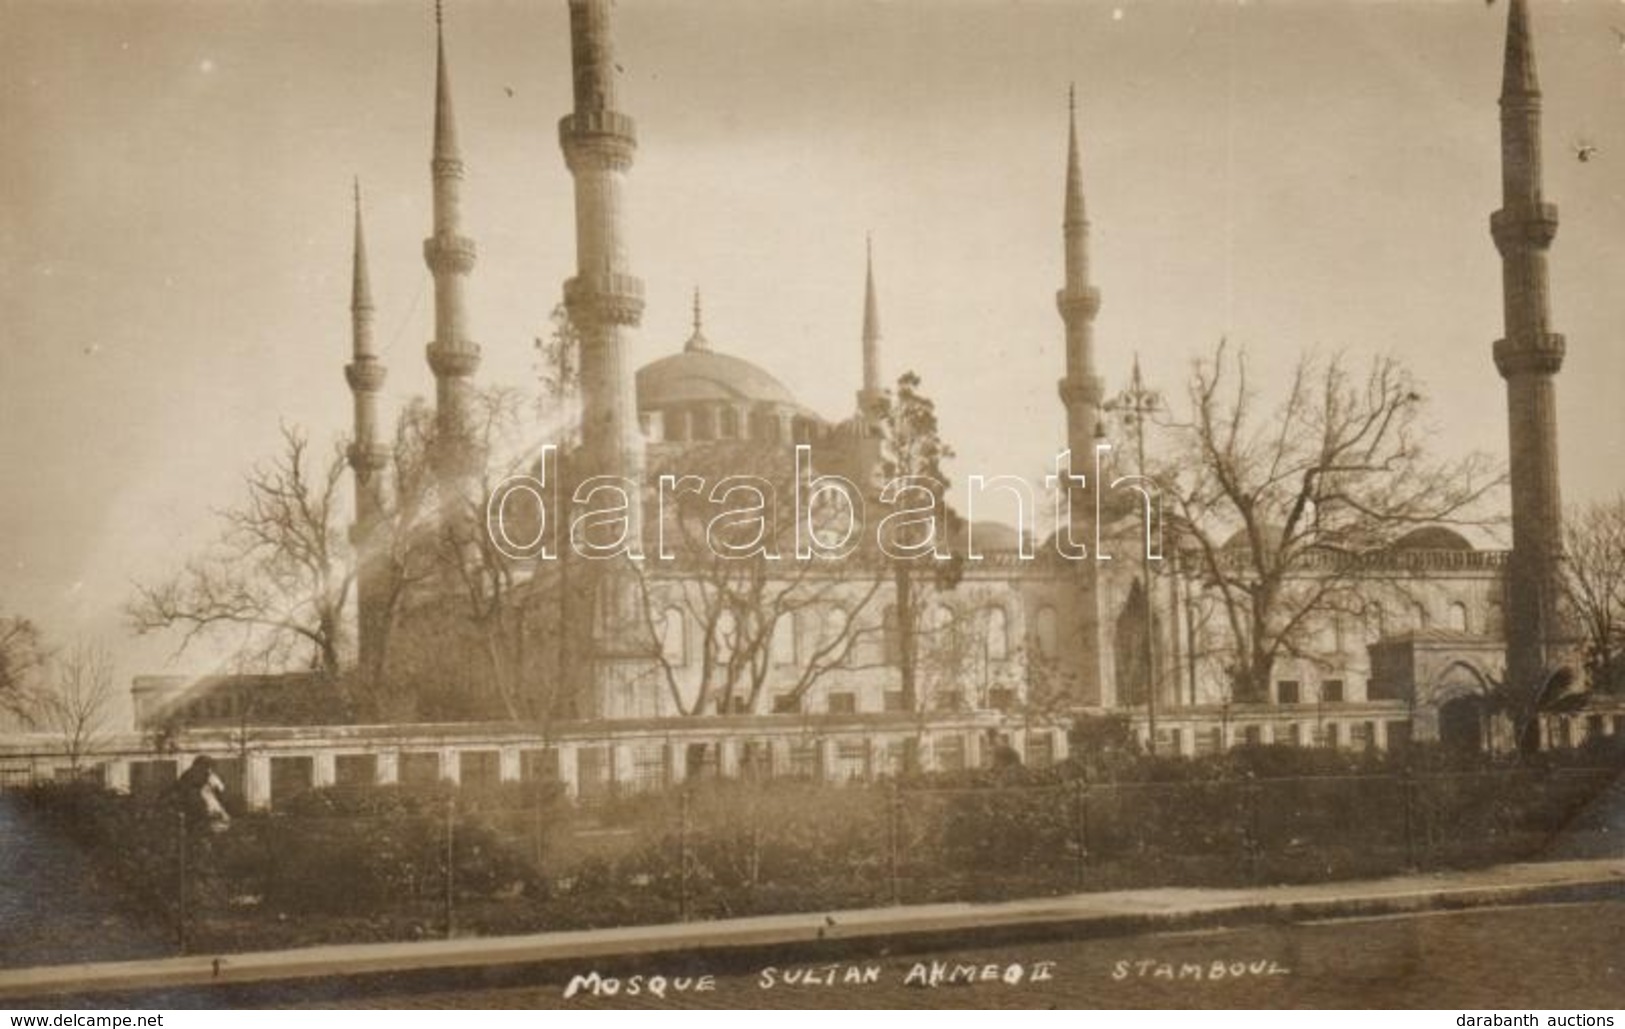 ** T3 Constantinople, Sultan Ahmed Mosque (EB) - Non Classificati